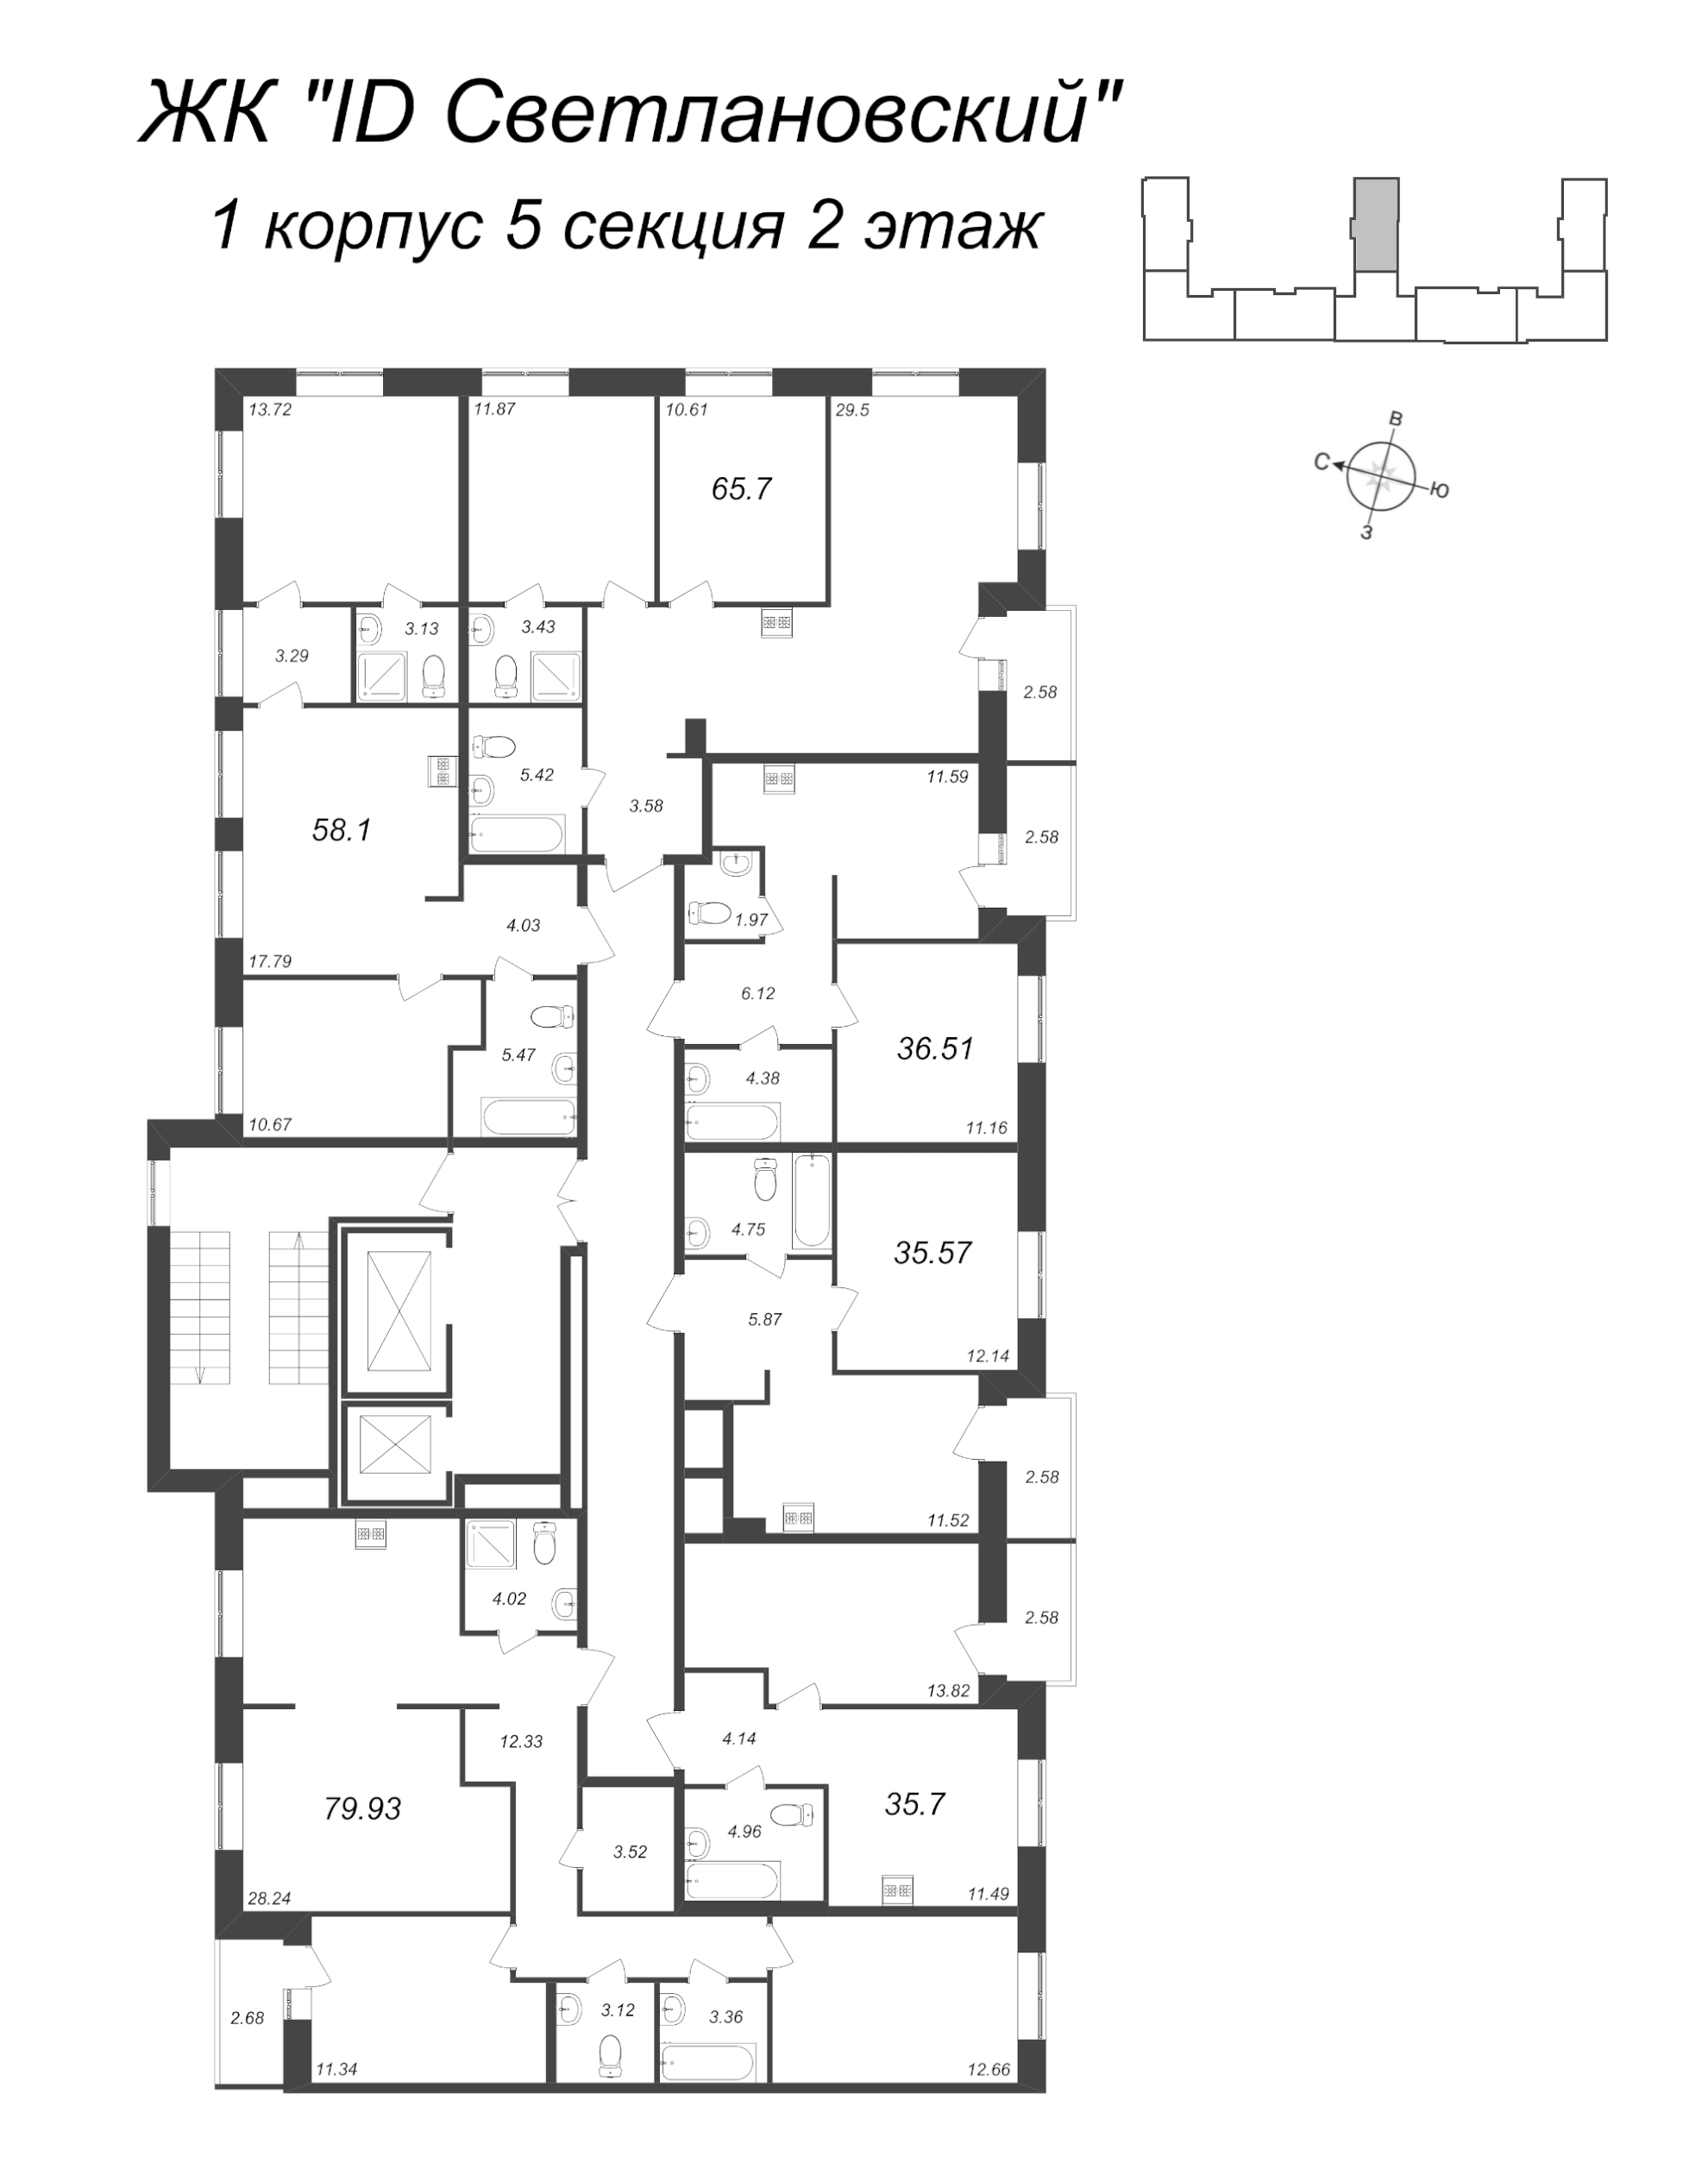 3-комнатная (Евро) квартира, 79.93 м² в ЖК "ID Svetlanovskiy" - планировка этажа